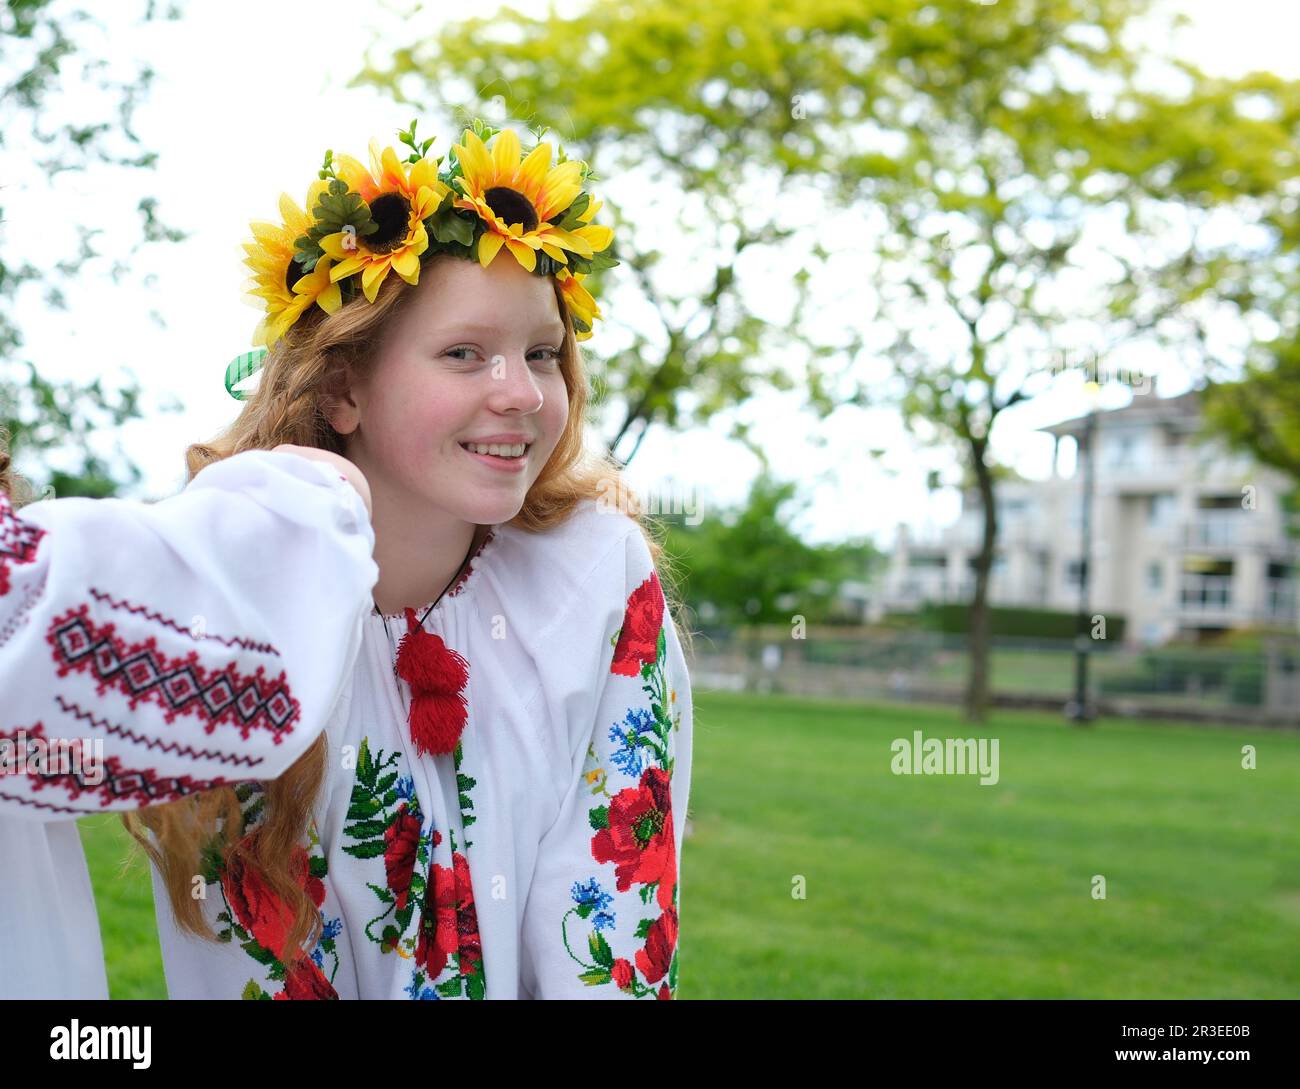 Ragazza soleggiato con capelli rossi luminosi si trova sullo sfondo di alberi verdi con corona di girasoli ricamati camicia nazionale donna Ucraina per la pace No guerra vittoria del patriottismo nazionale Ucraina Foto Stock